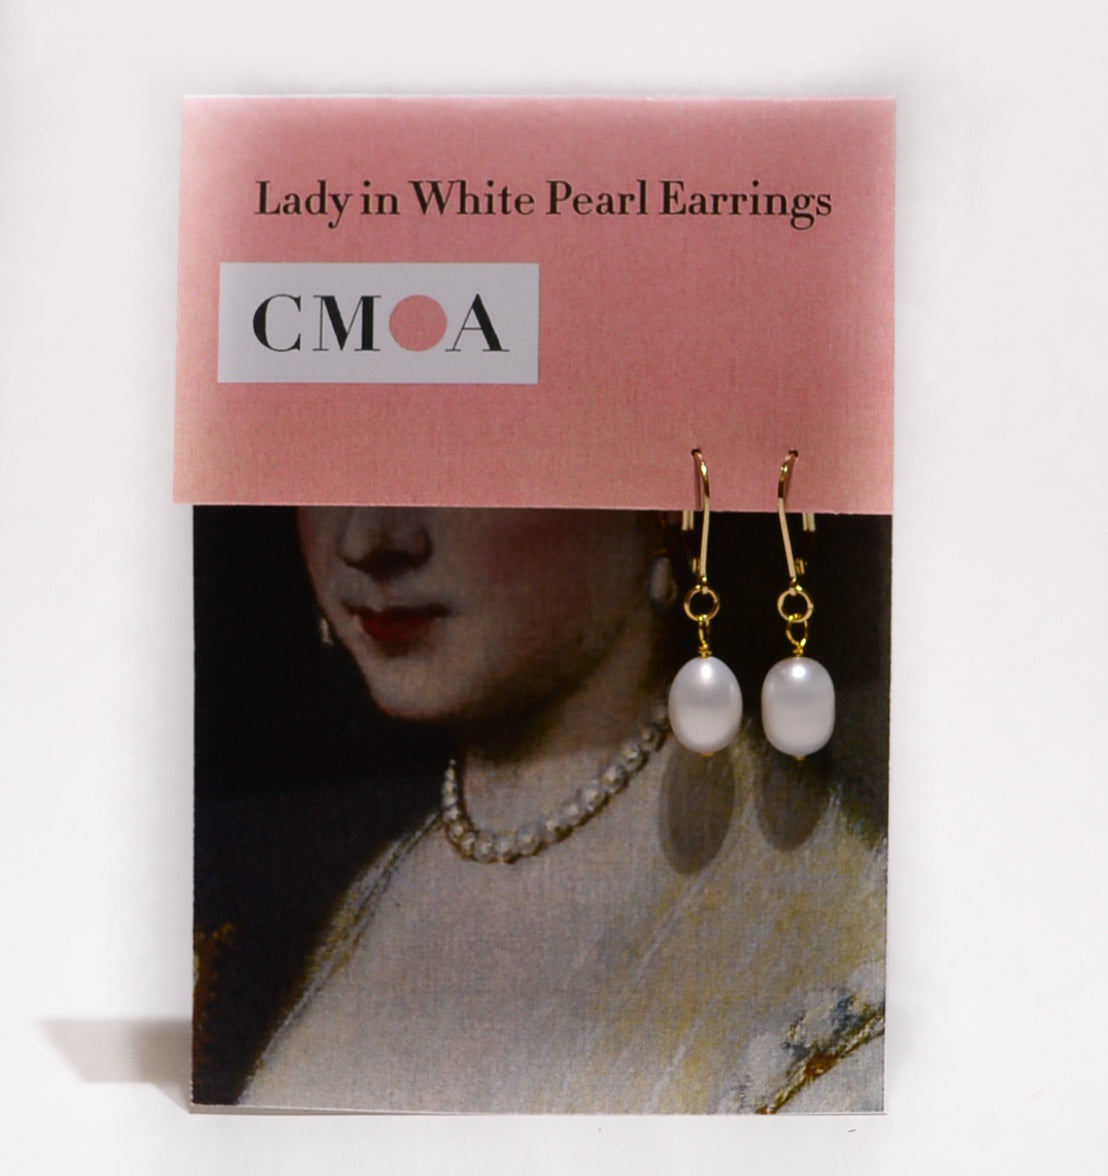 Lady in White Pearl Earrings, earrings